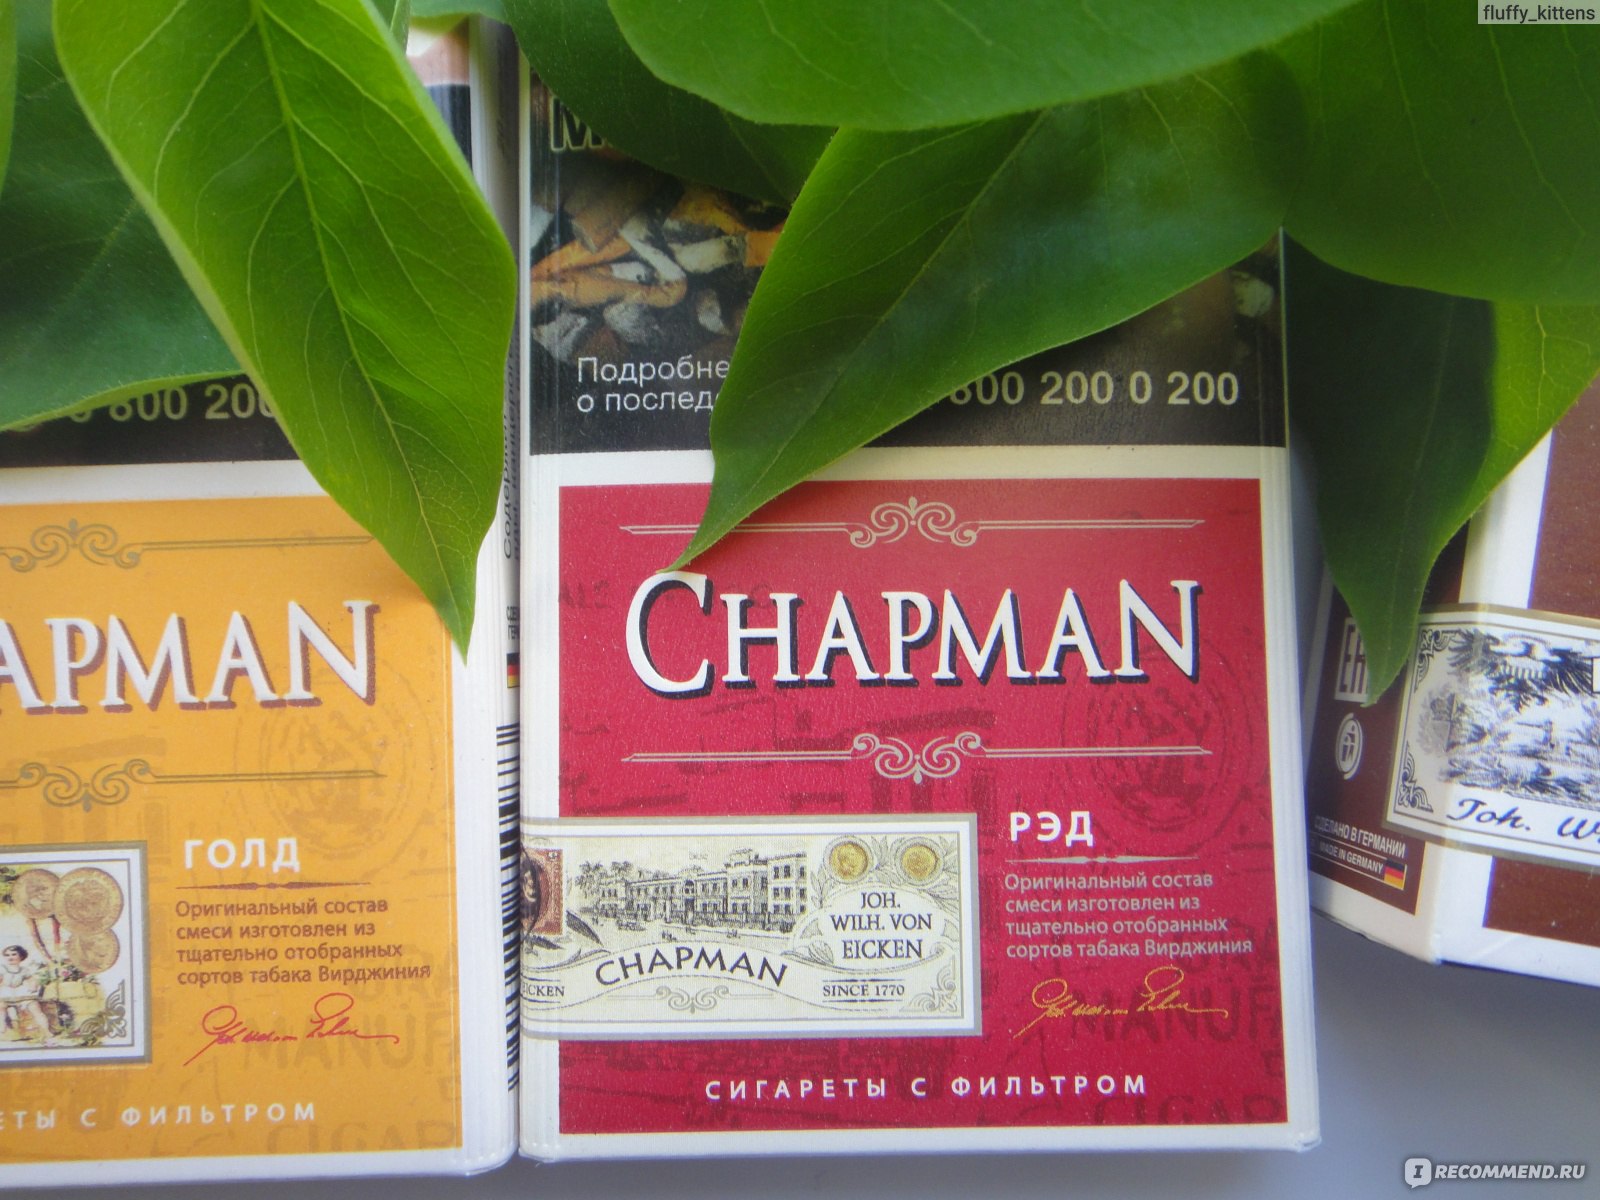 Чапмен вкусы. Chapman Грин вкус. Chapman Рэд. Чапман сигареты. Сигареты Чапман Грин.